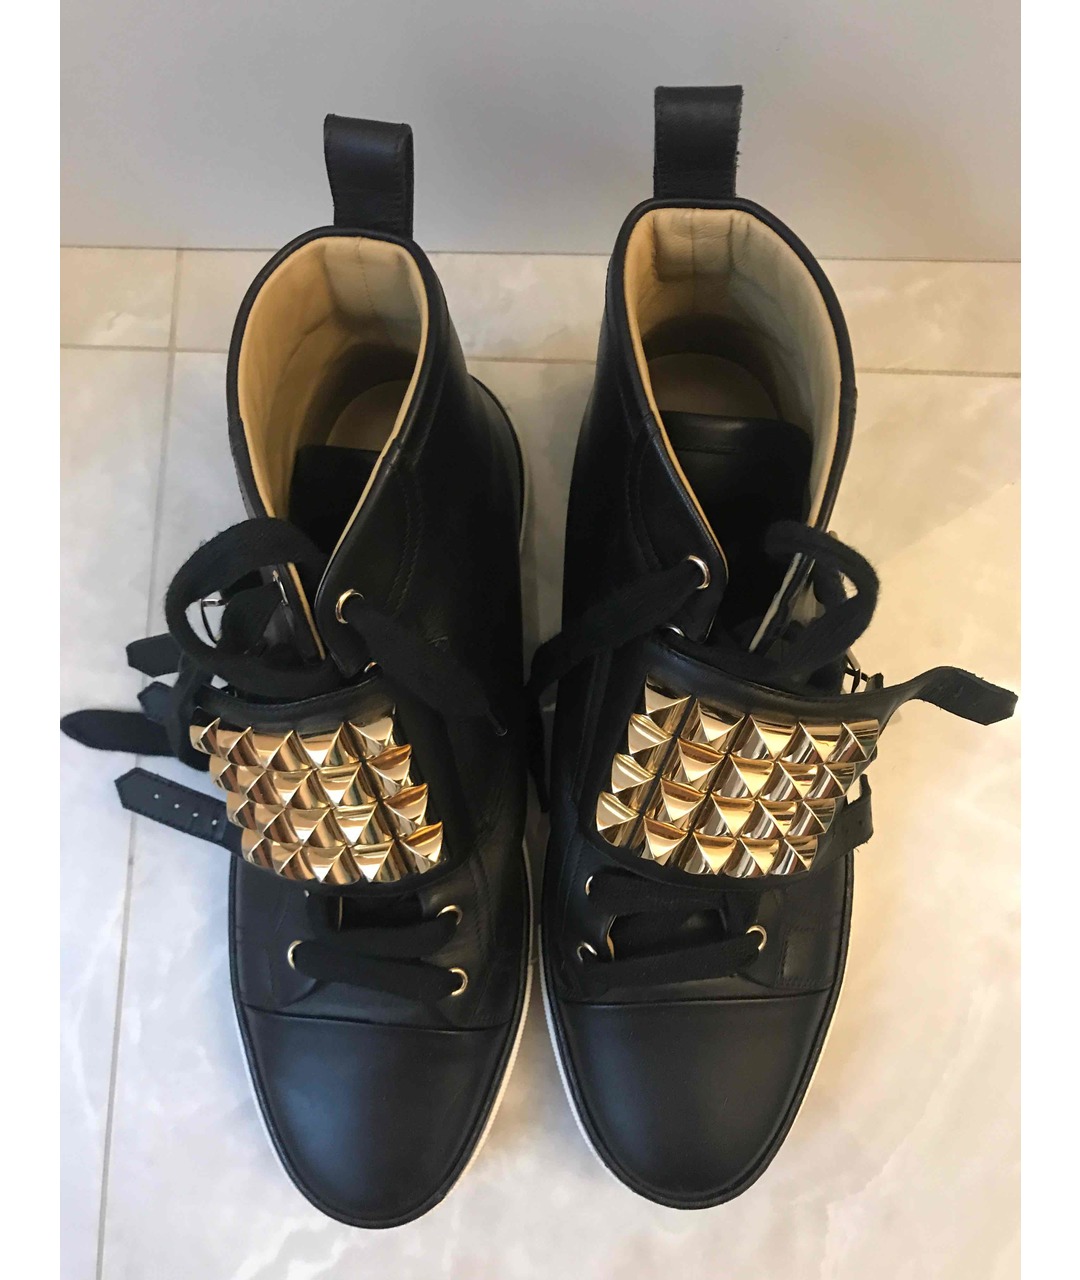 HERMES PRE-OWNED Черные кожаные кроссовки, фото 2